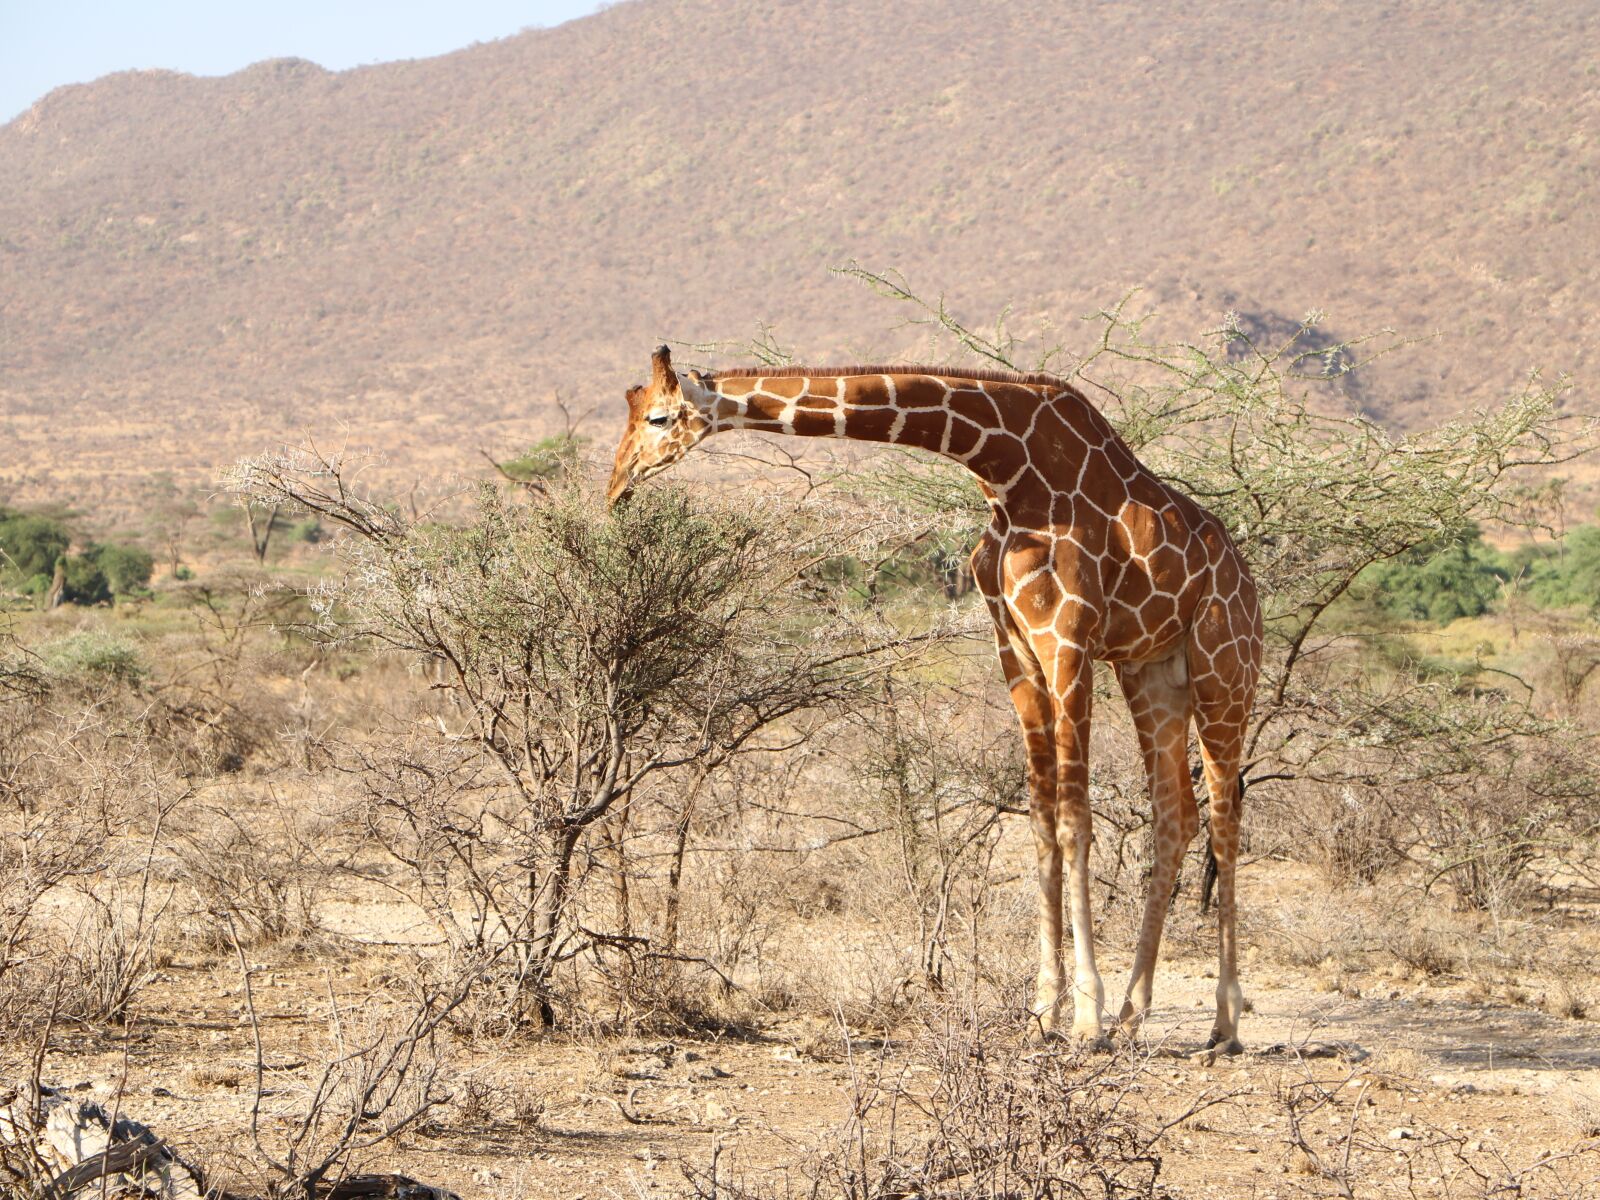 Canon EOS 760D (EOS Rebel T6s / EOS 8000D) sample photo. Giraffe, safari, nature photography